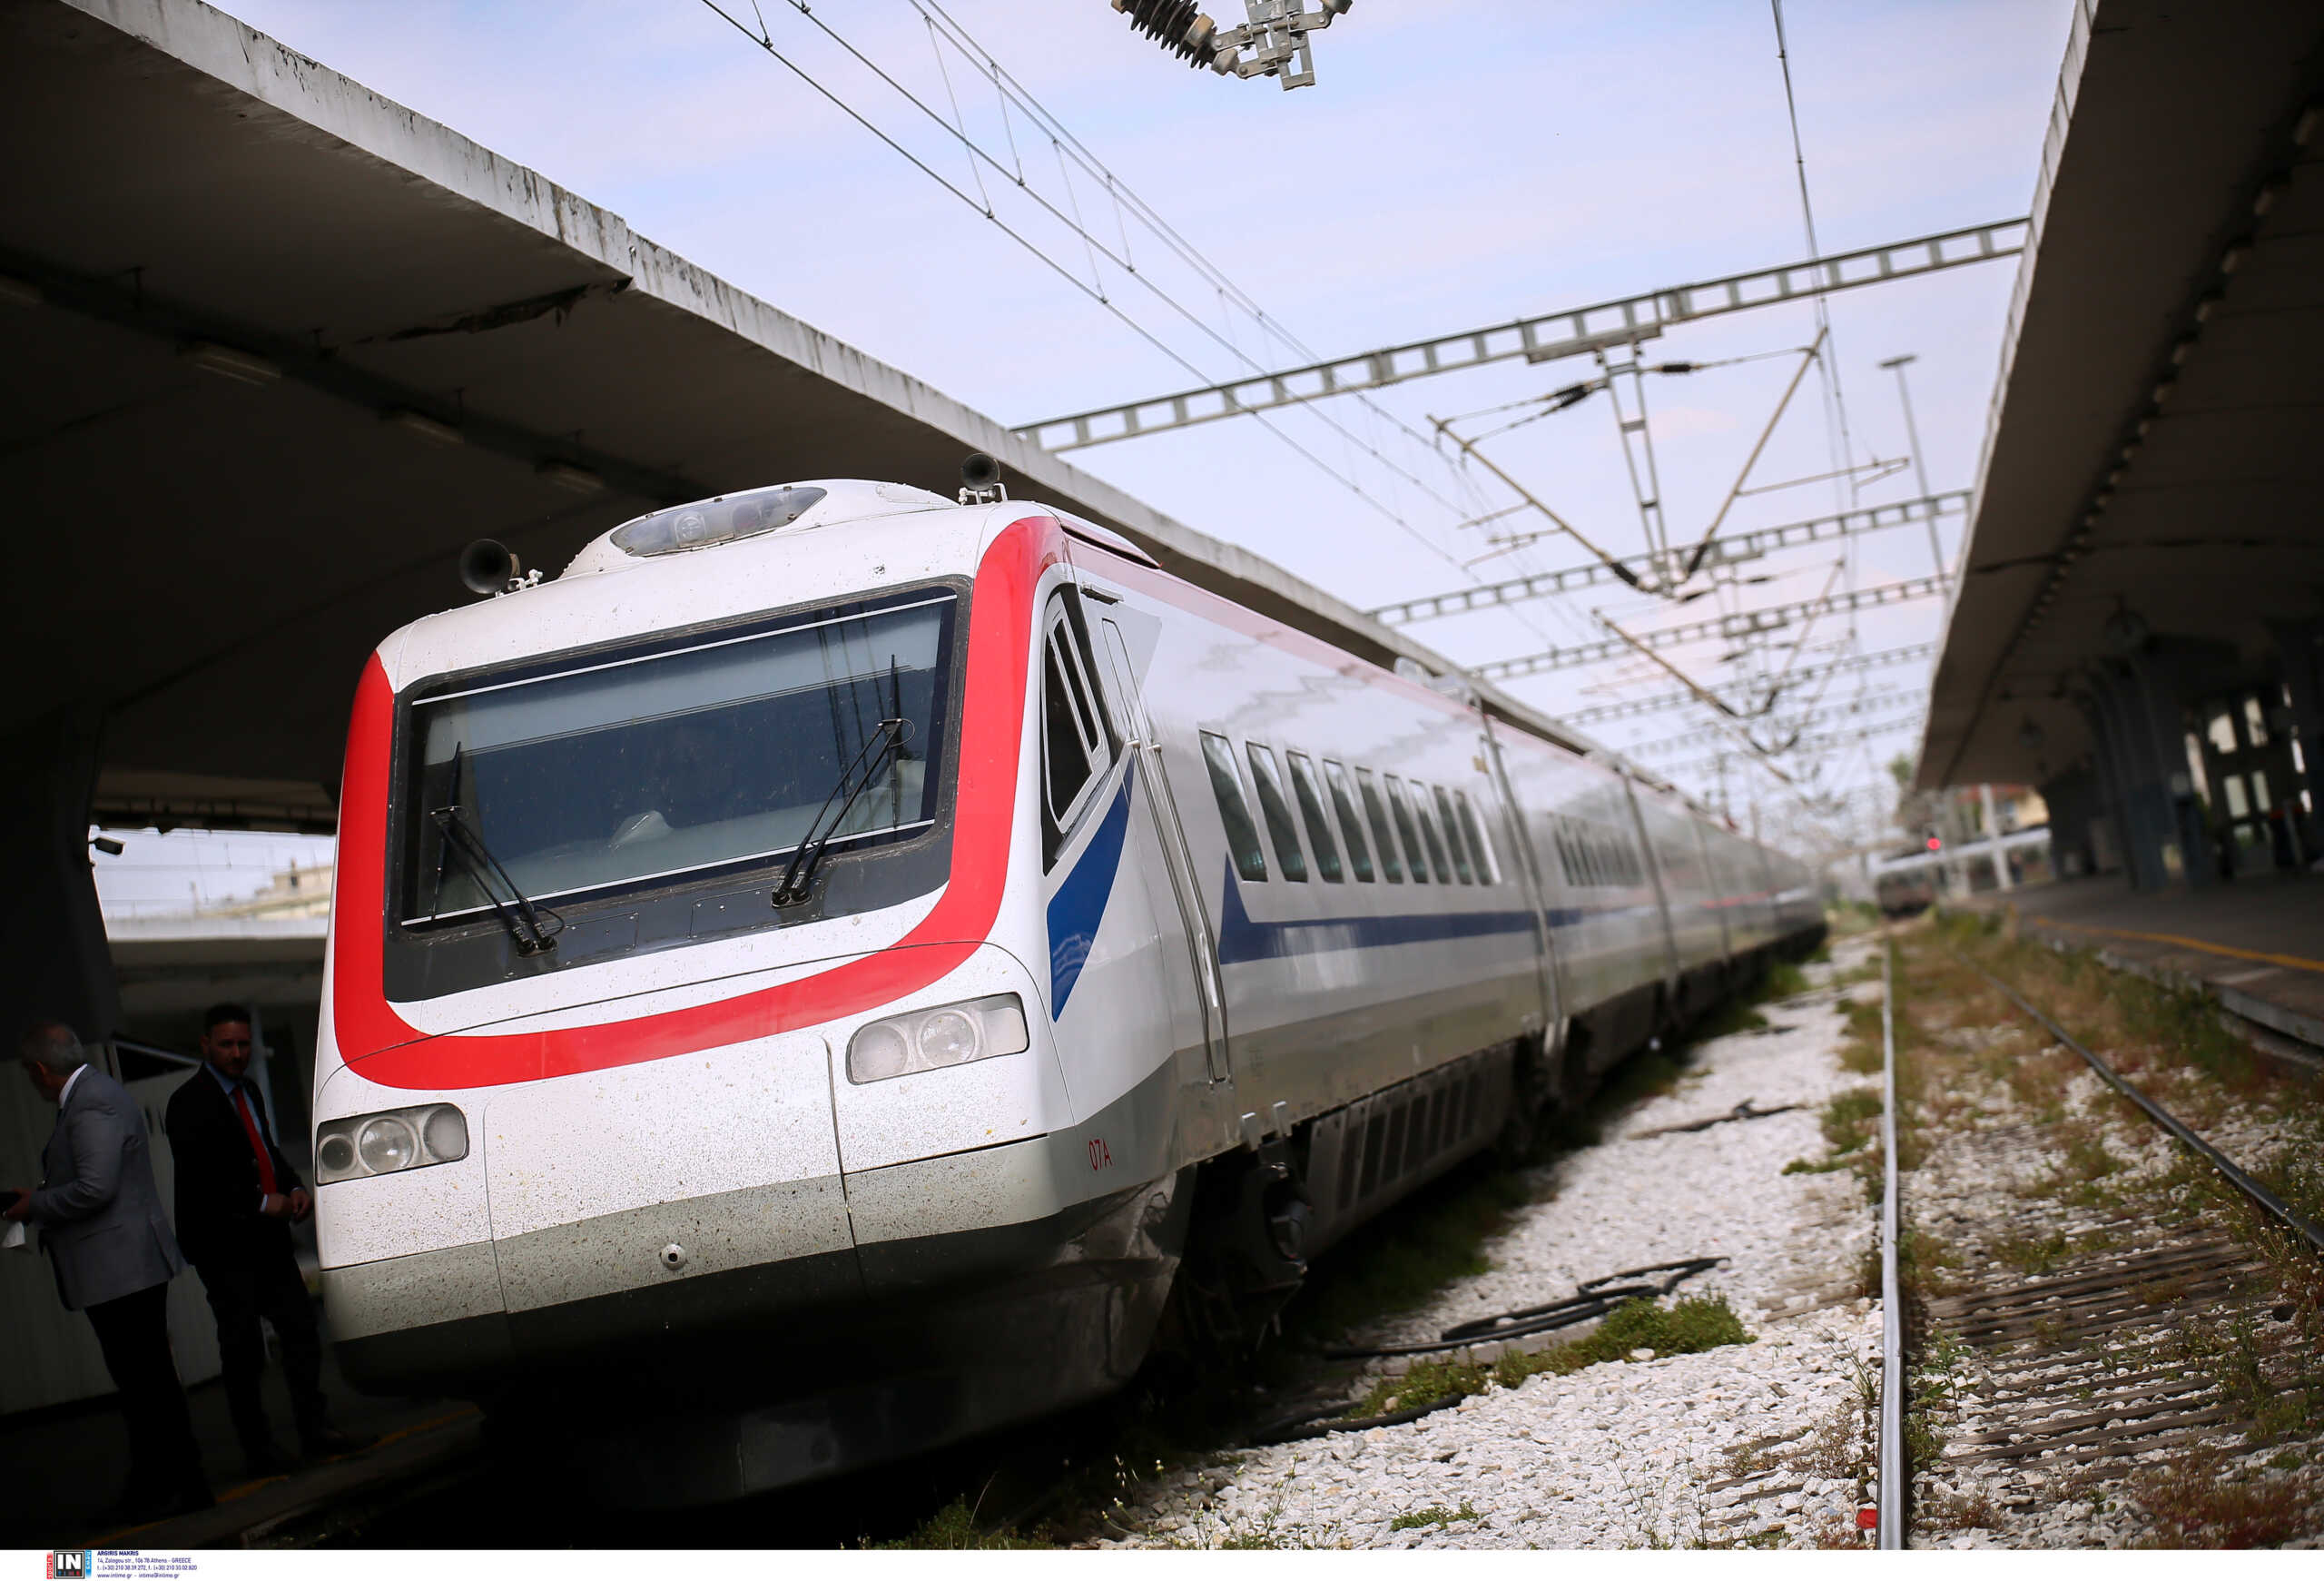 Τέμπη: Αχρηστεύτηκε σύστημα αξίας 25 εκατ. ευρώ που θα σταματούσε αυτόματα τα τρένα